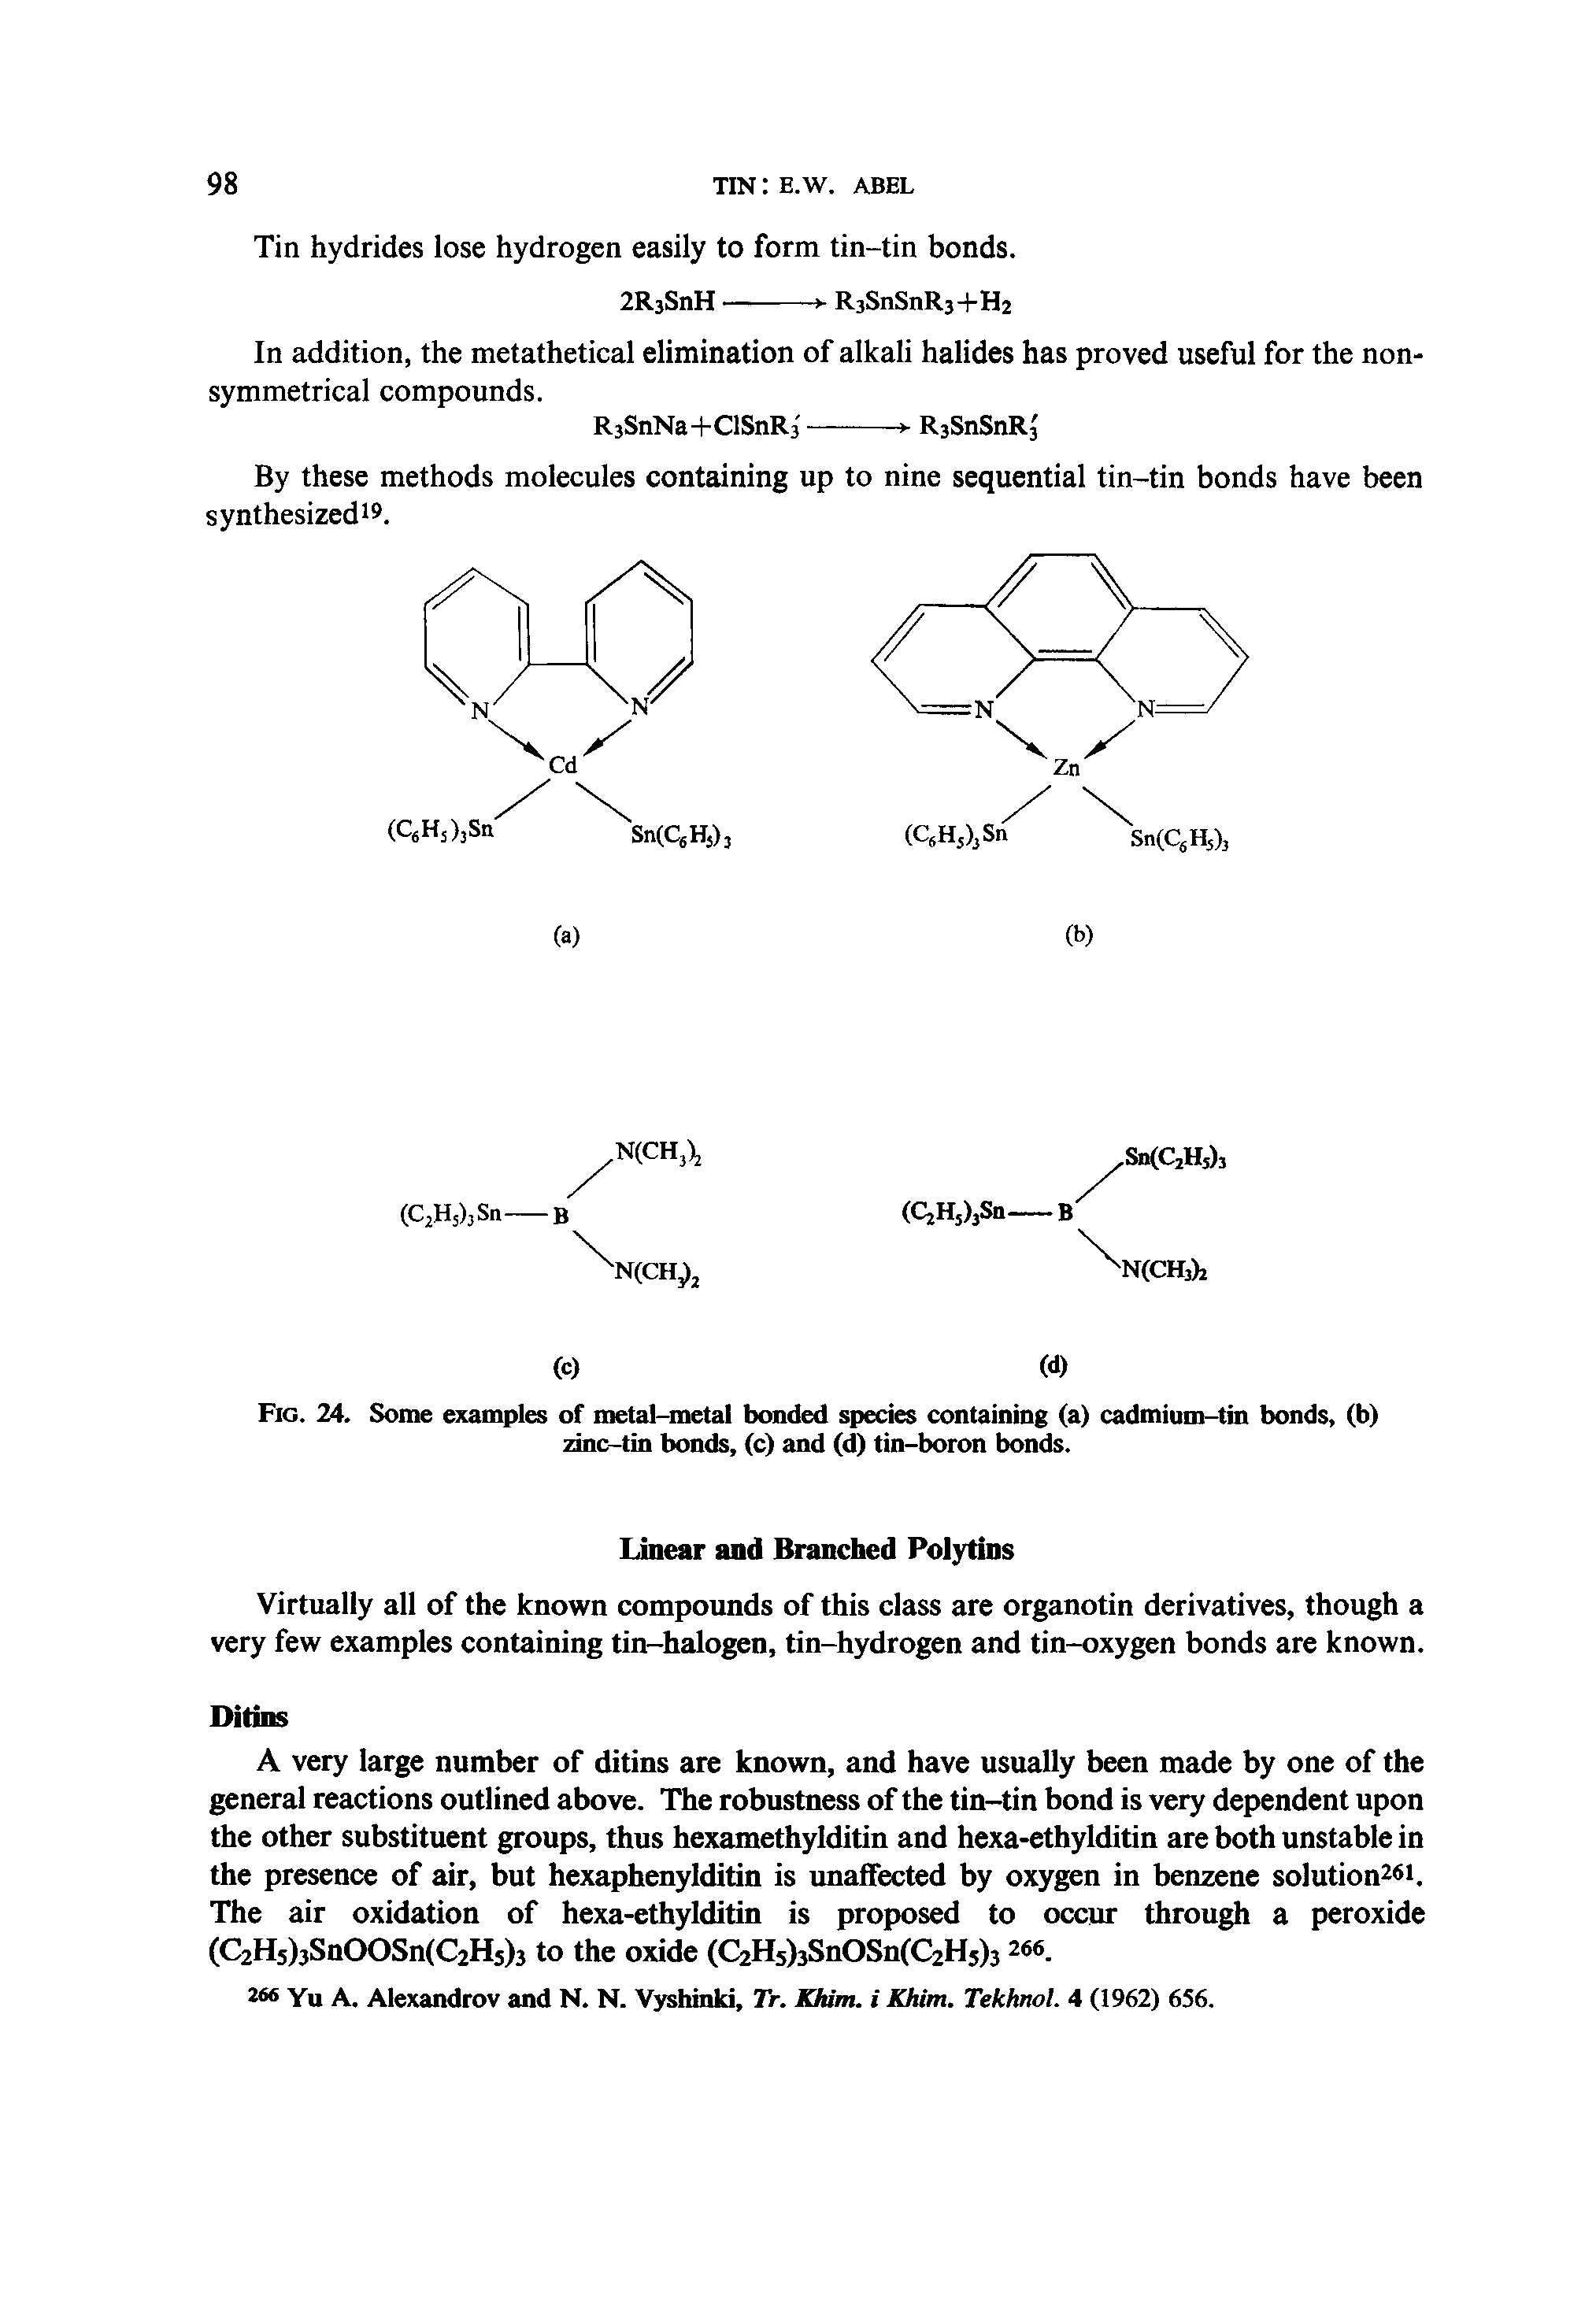 Fig. 24. Some examples of metal-metal bonded species containing (a) cadmium-tin bonds, (b) zinc-tin bonds, (c) and (d) tin-boron bonds.